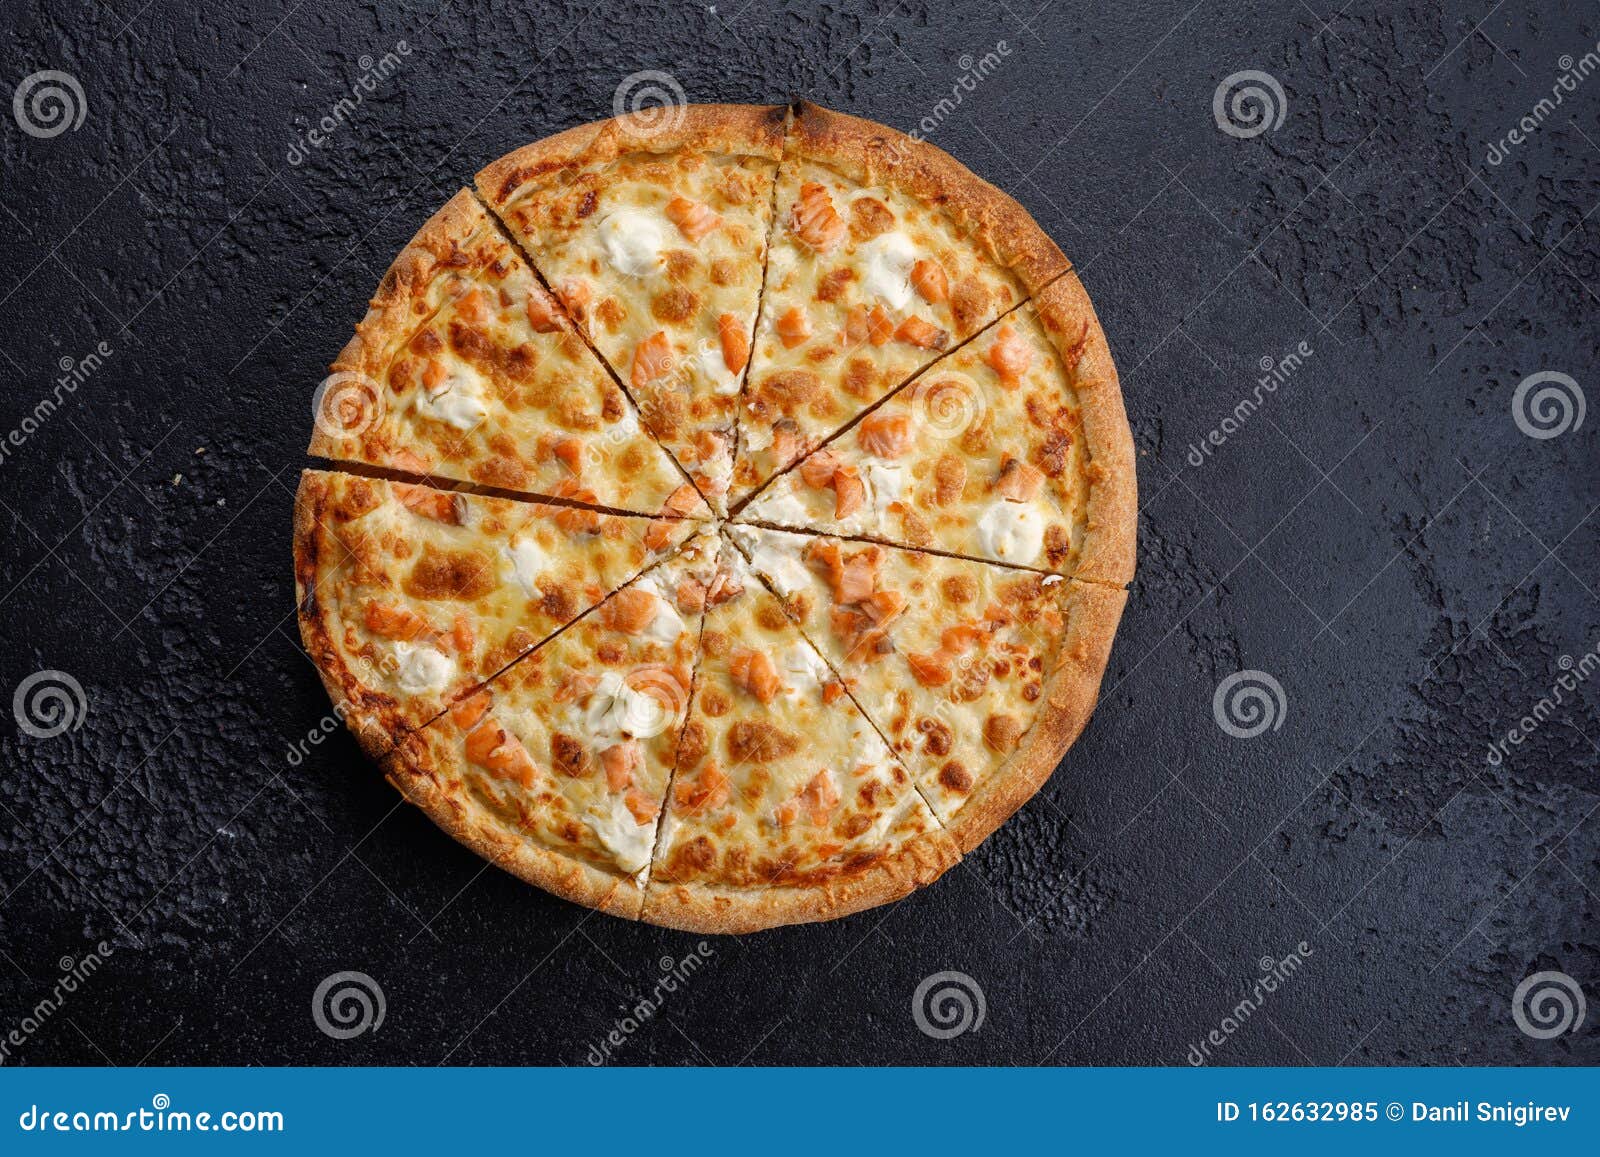 пицца четыре сыра на английском фото 77